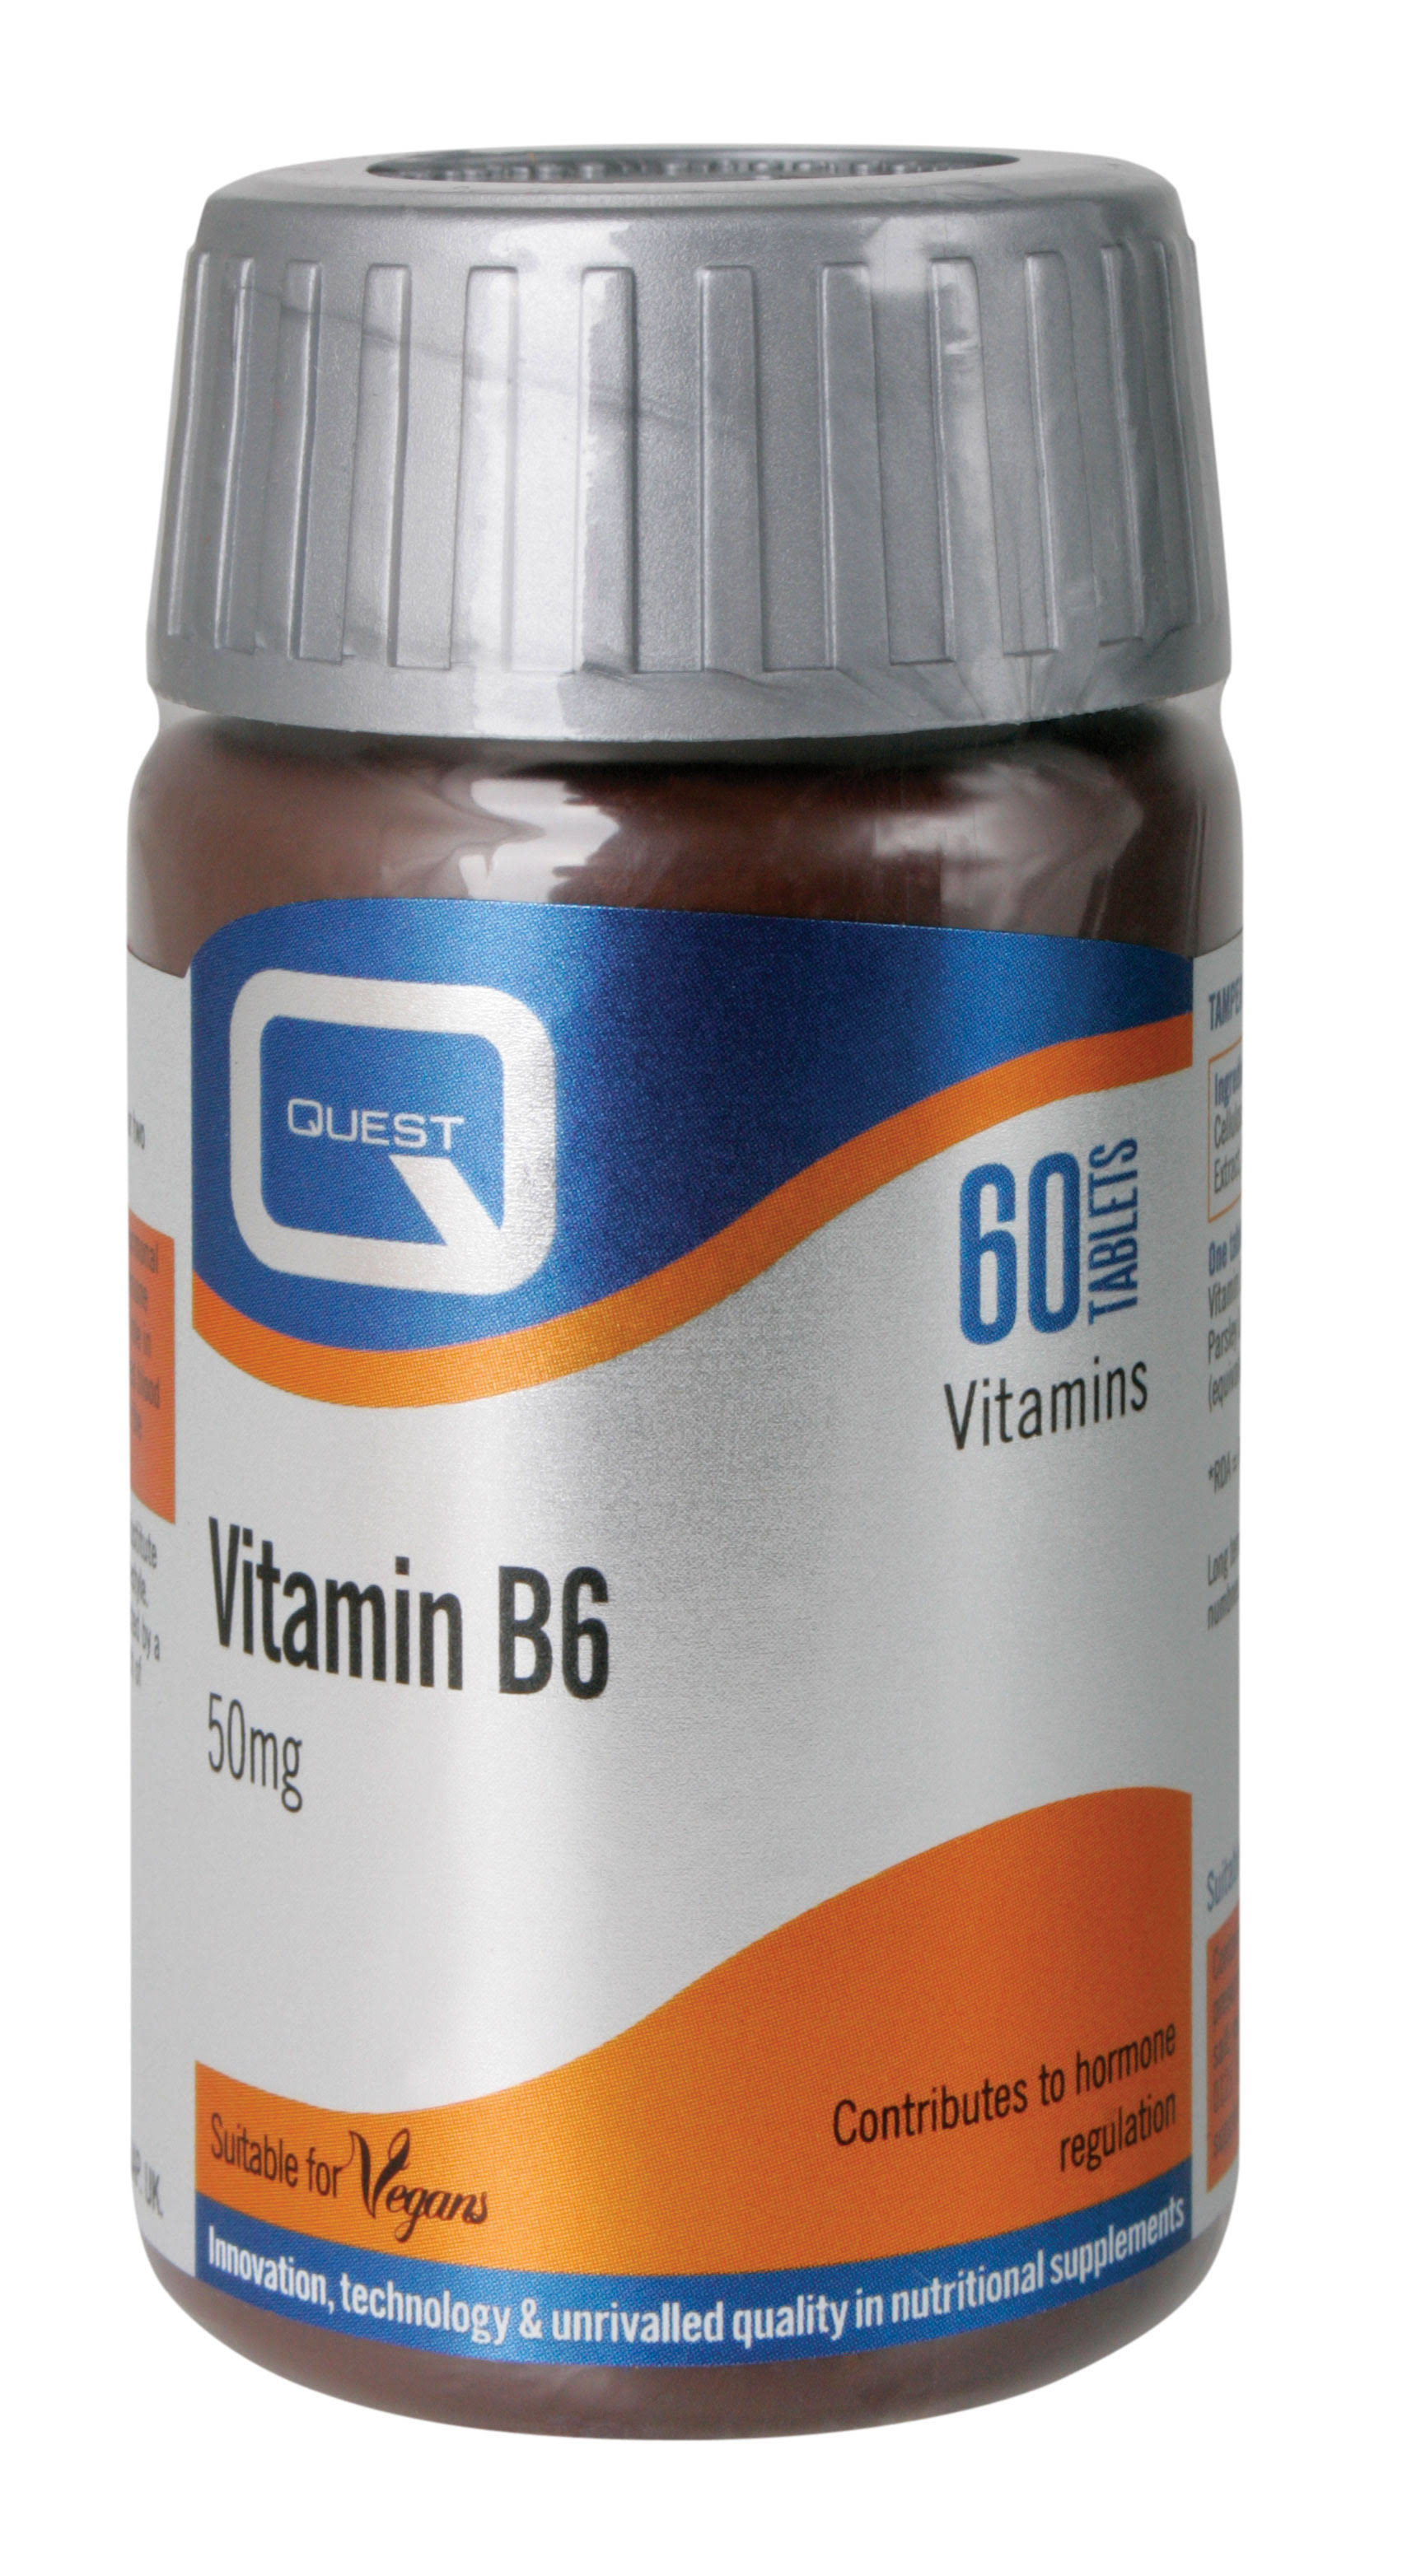 Quest - Vitamin B6 50mg Tablets.